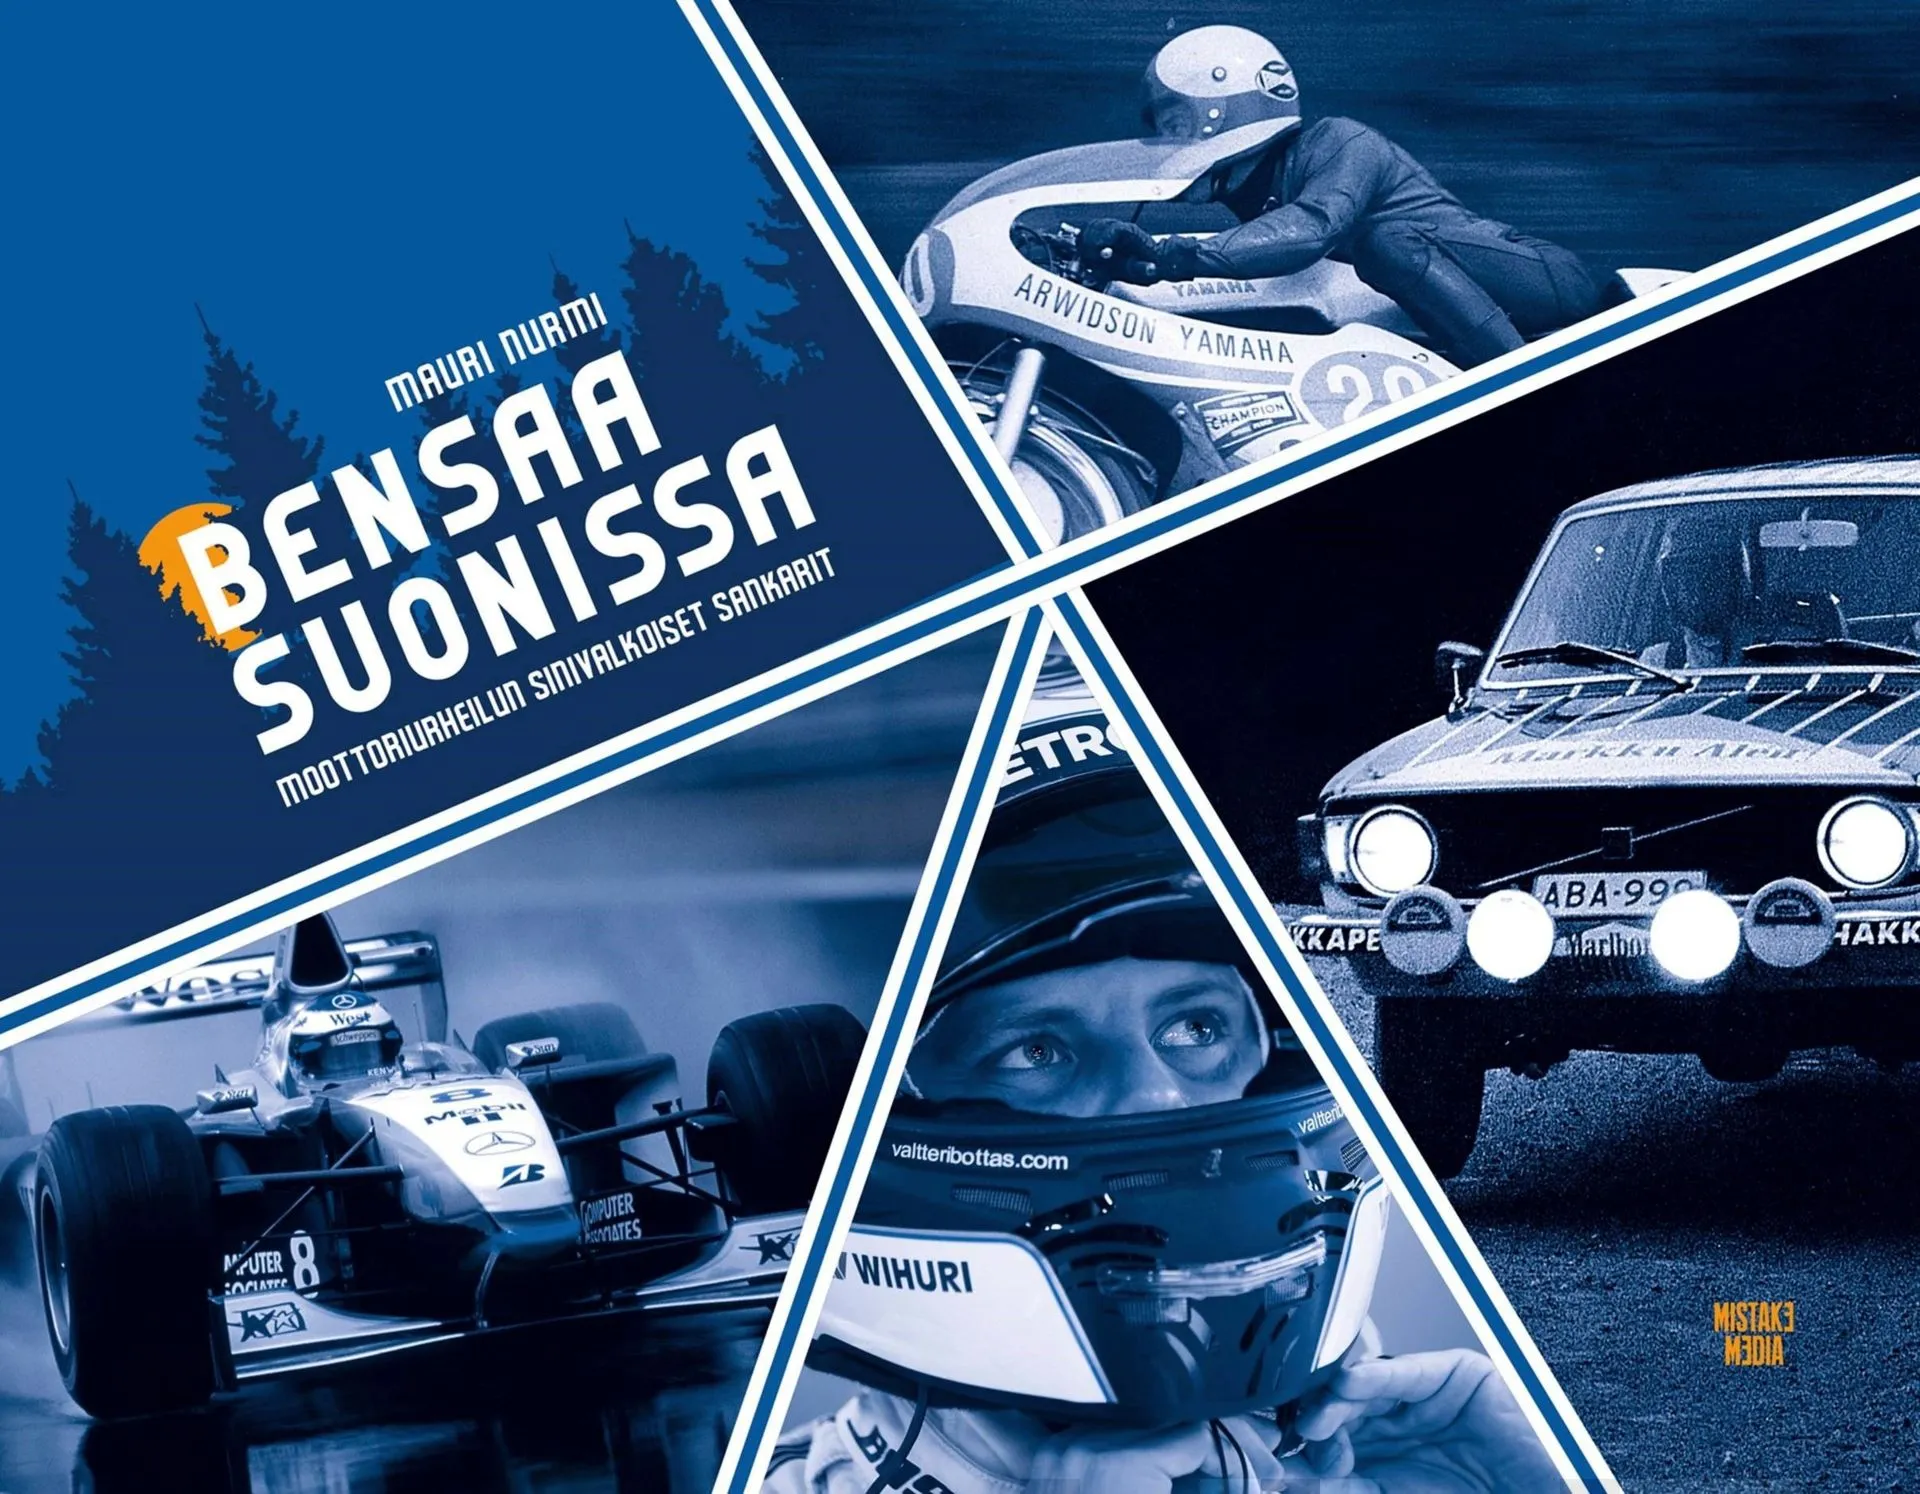 Nurmi, Bensaa suonissa - Moottoriurheilun sinivalkoiset sankarit